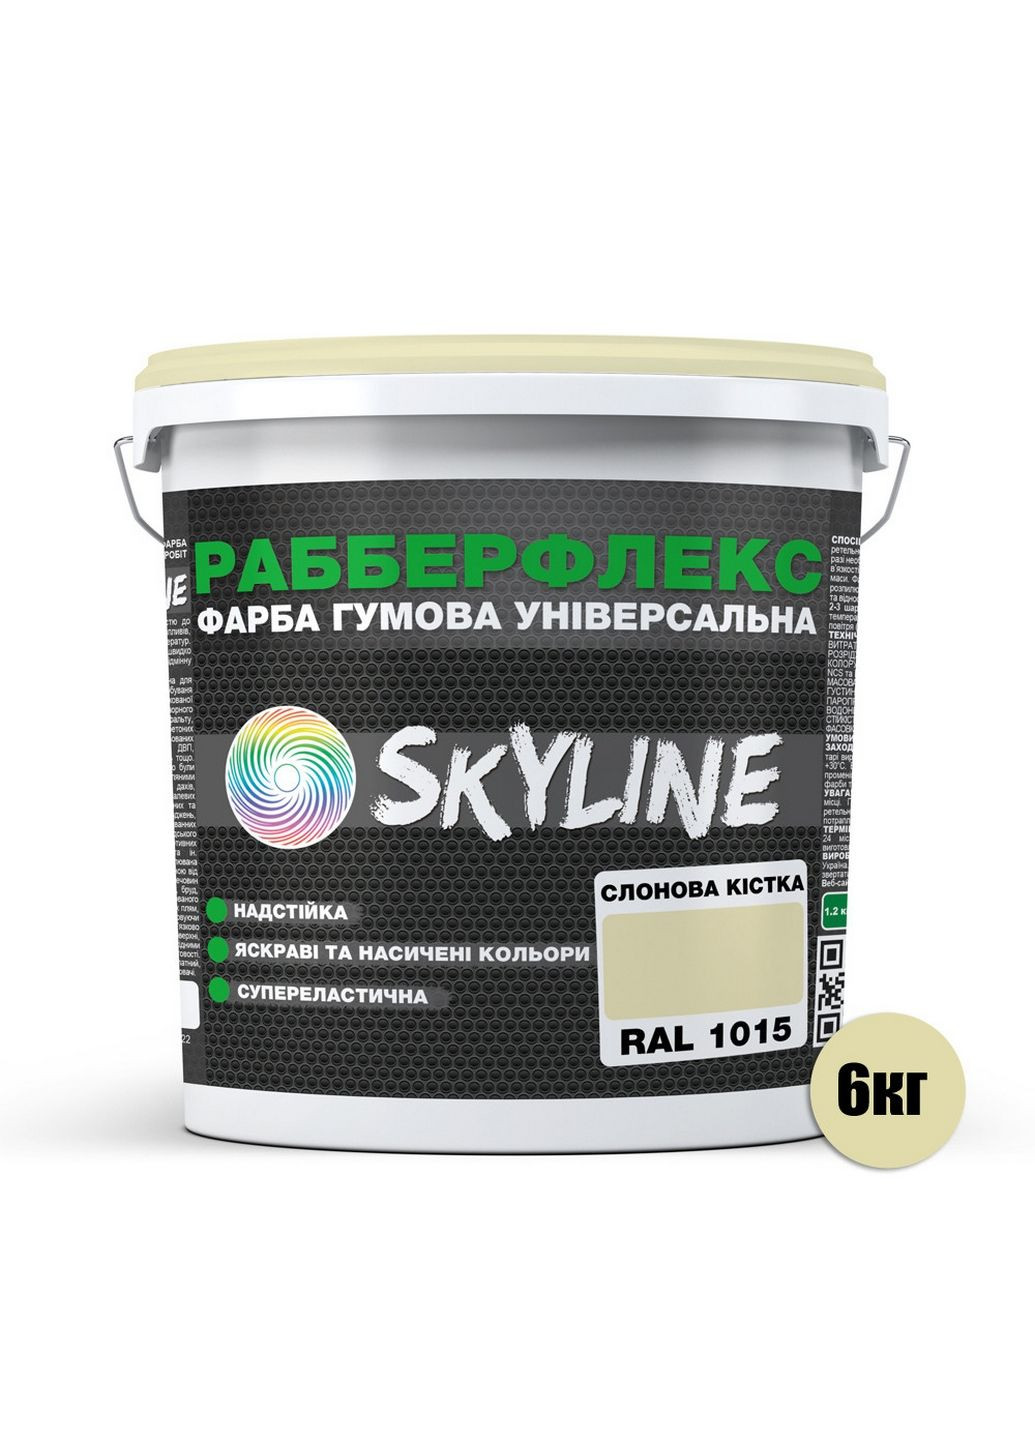 Надстійка фарба гумова супереластична «РабберФлекс» 6 кг SkyLine (289367752)